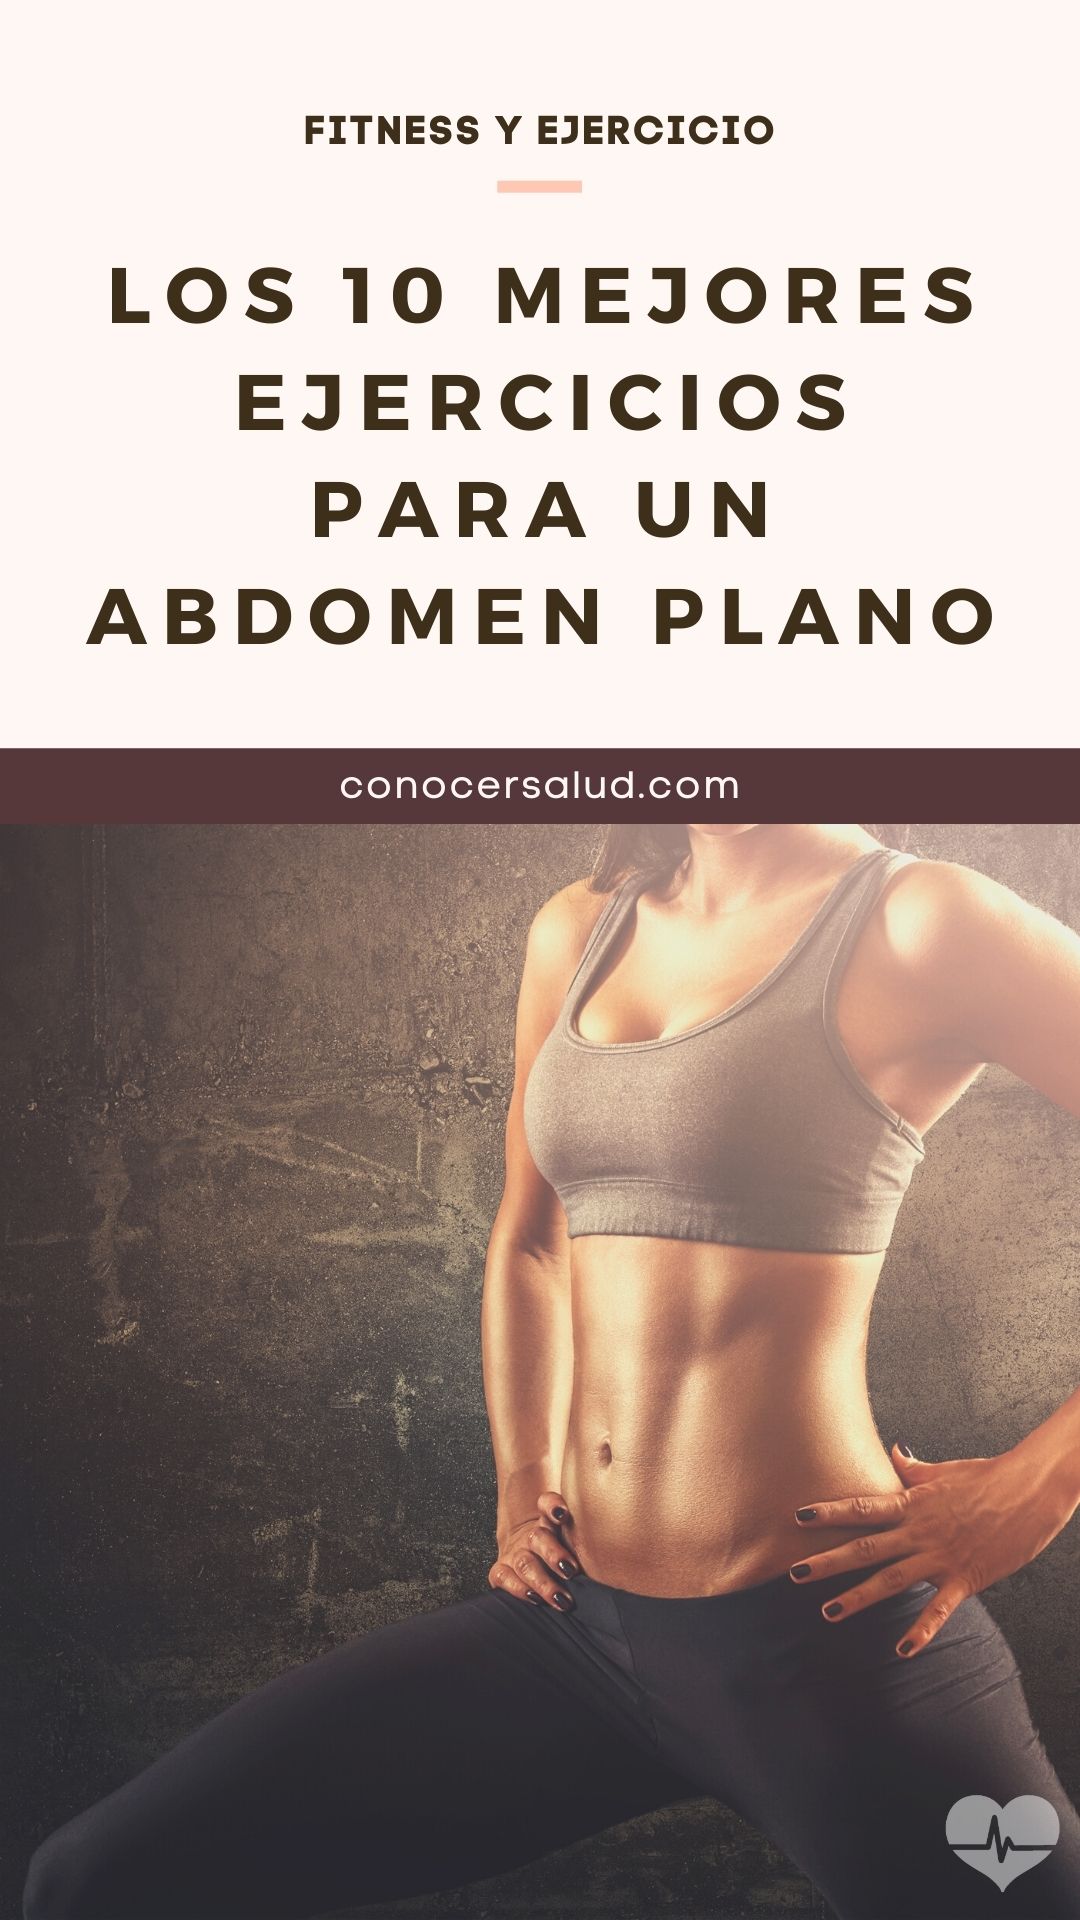 Los 10 mejores ejercicios para un abdomen plano